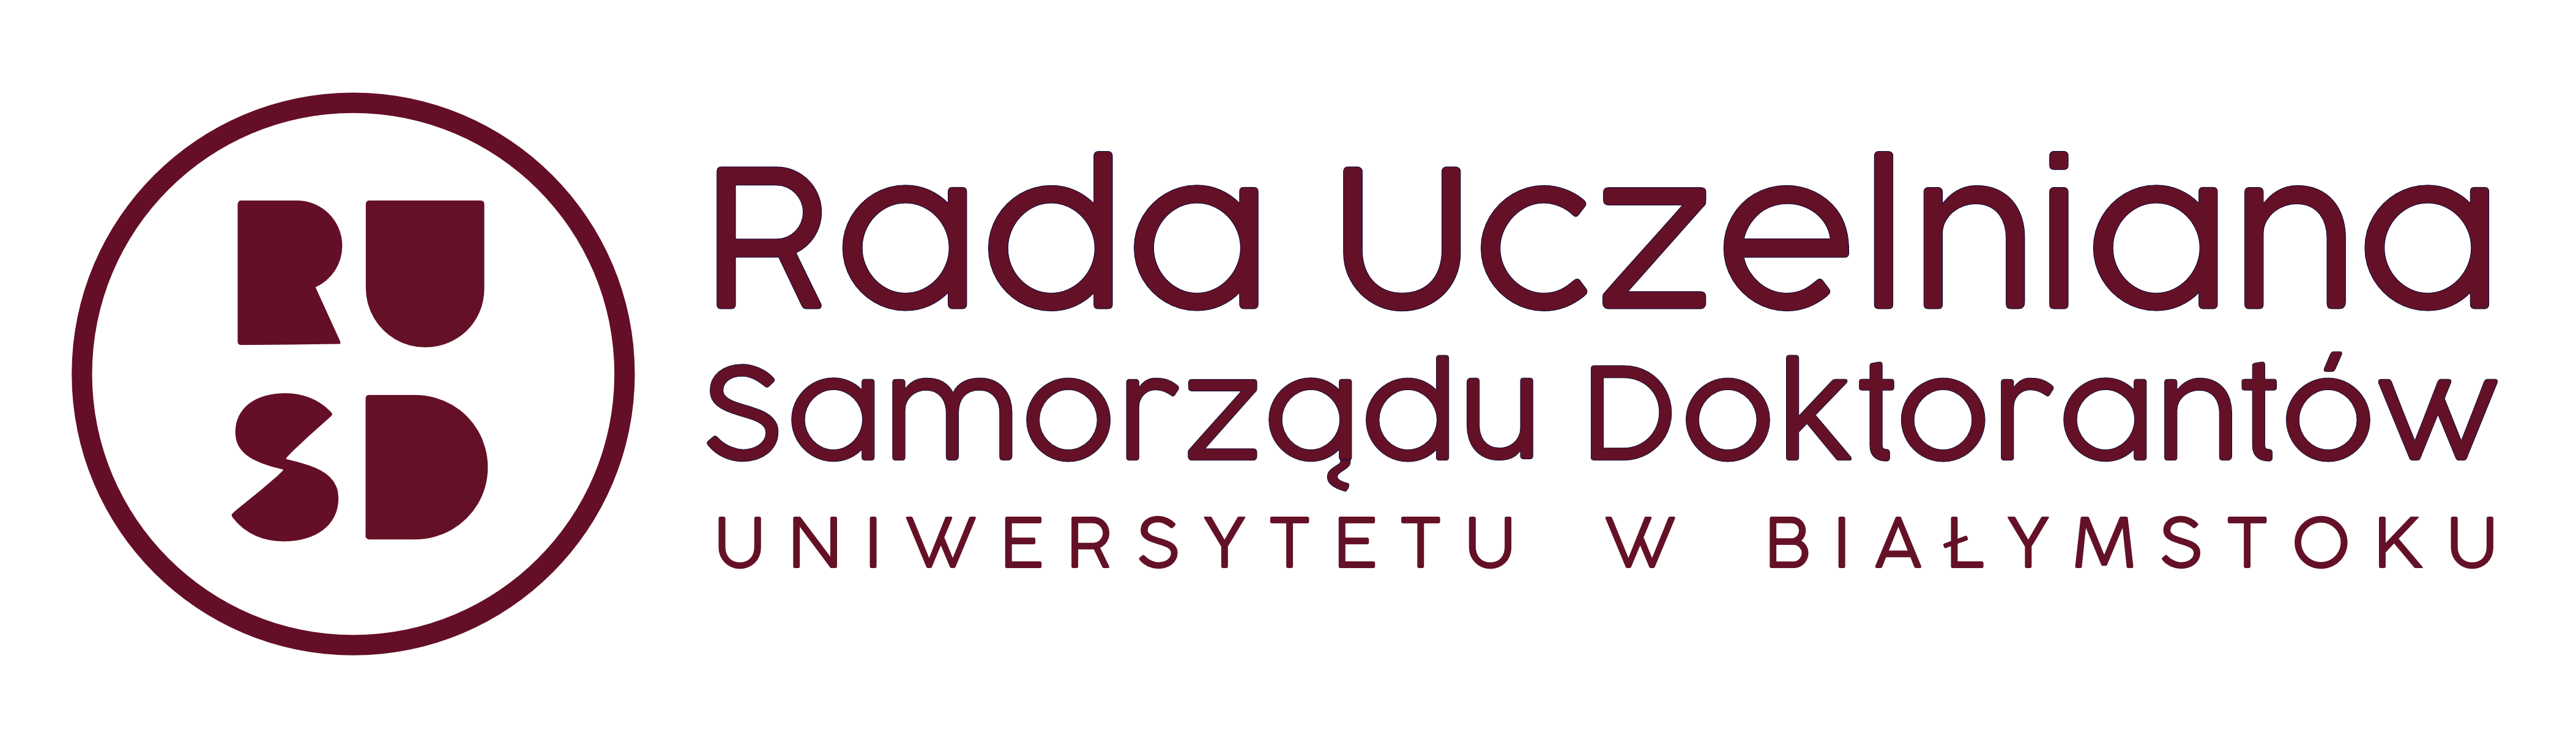 Rada Uczelniana Samorządu Doktorantów logo